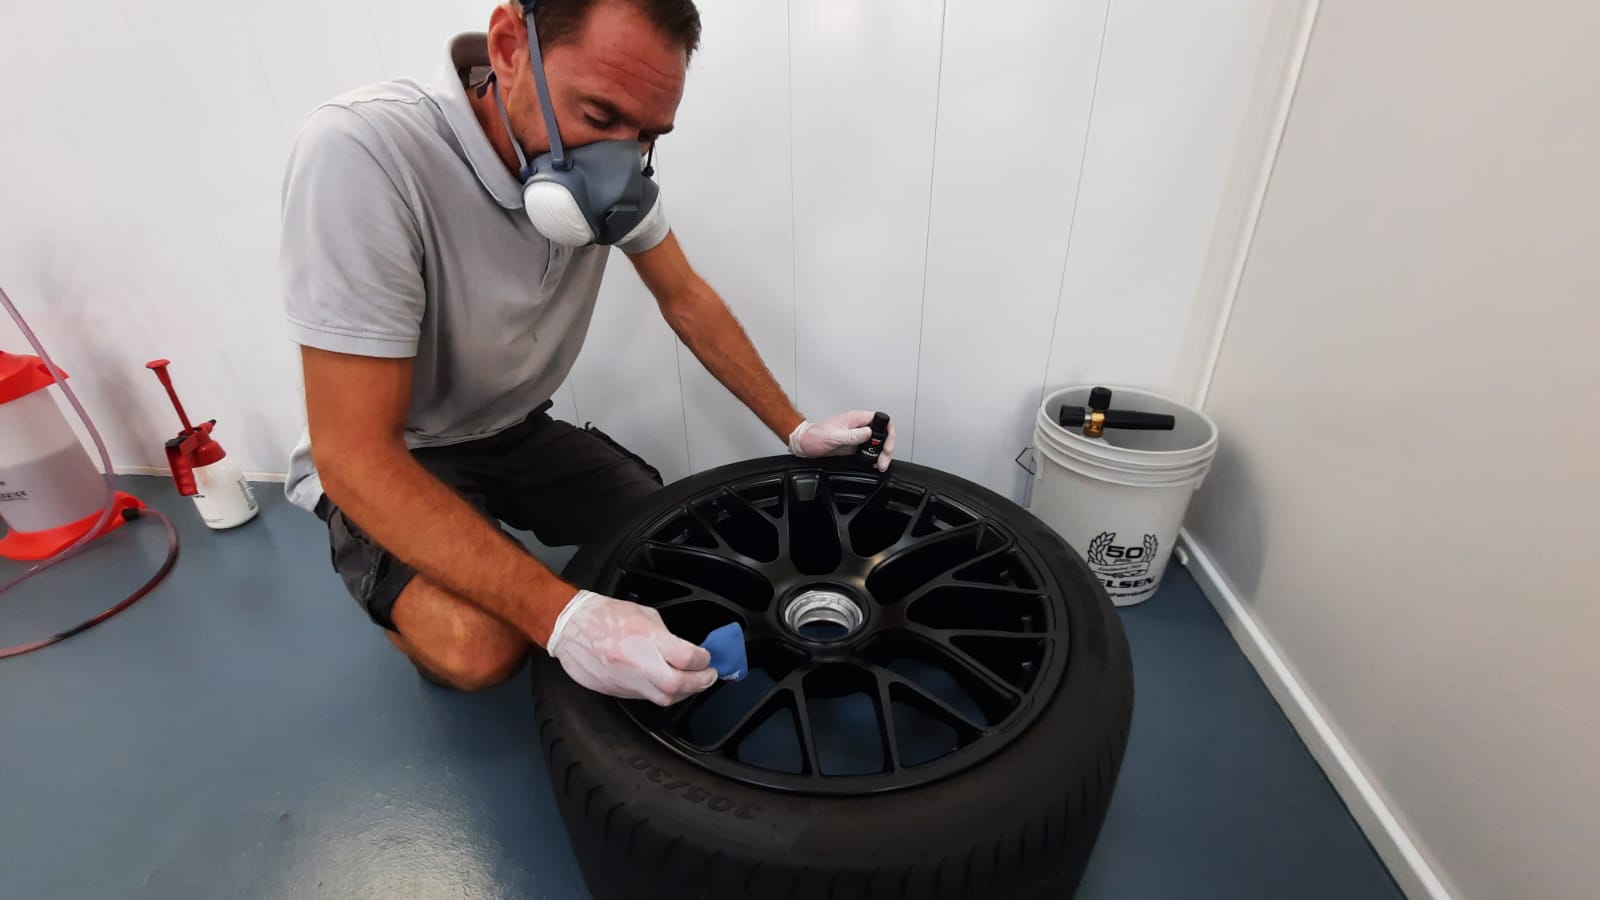 Après nettoyage des roues, pose du traitement Ceramic-Guard sur jantes Porsche 20P 911 Turbo Design, qui facilitera l'entretien de celles-ci